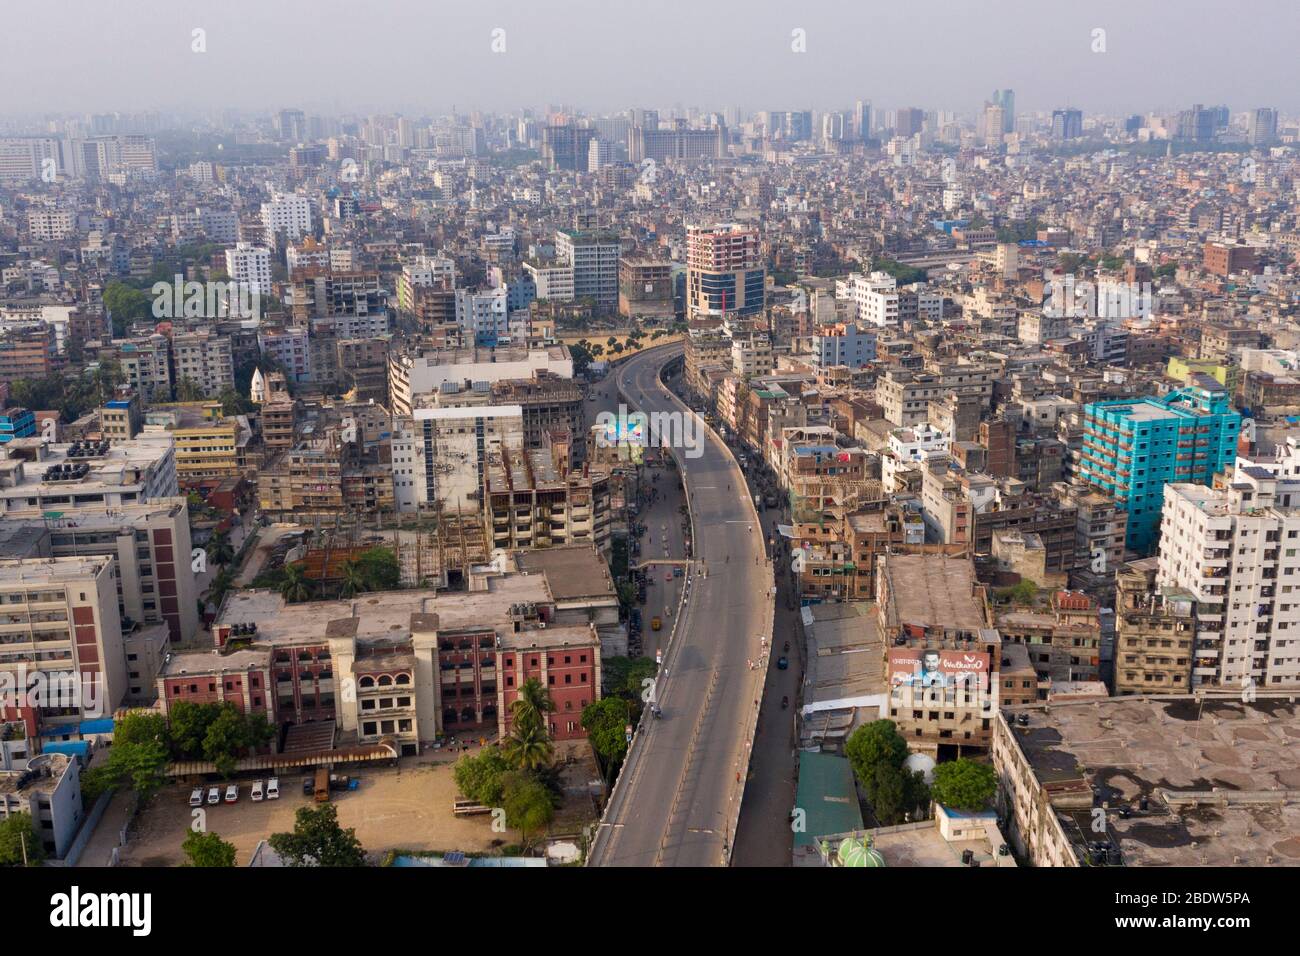 DHAKA, BANGLADESH - APRILE 08: Veduta aerea di una strada di passaggio vuota durante l'assalto imposto dal governo come misura preventiva contro il COVID-19 coro Foto Stock